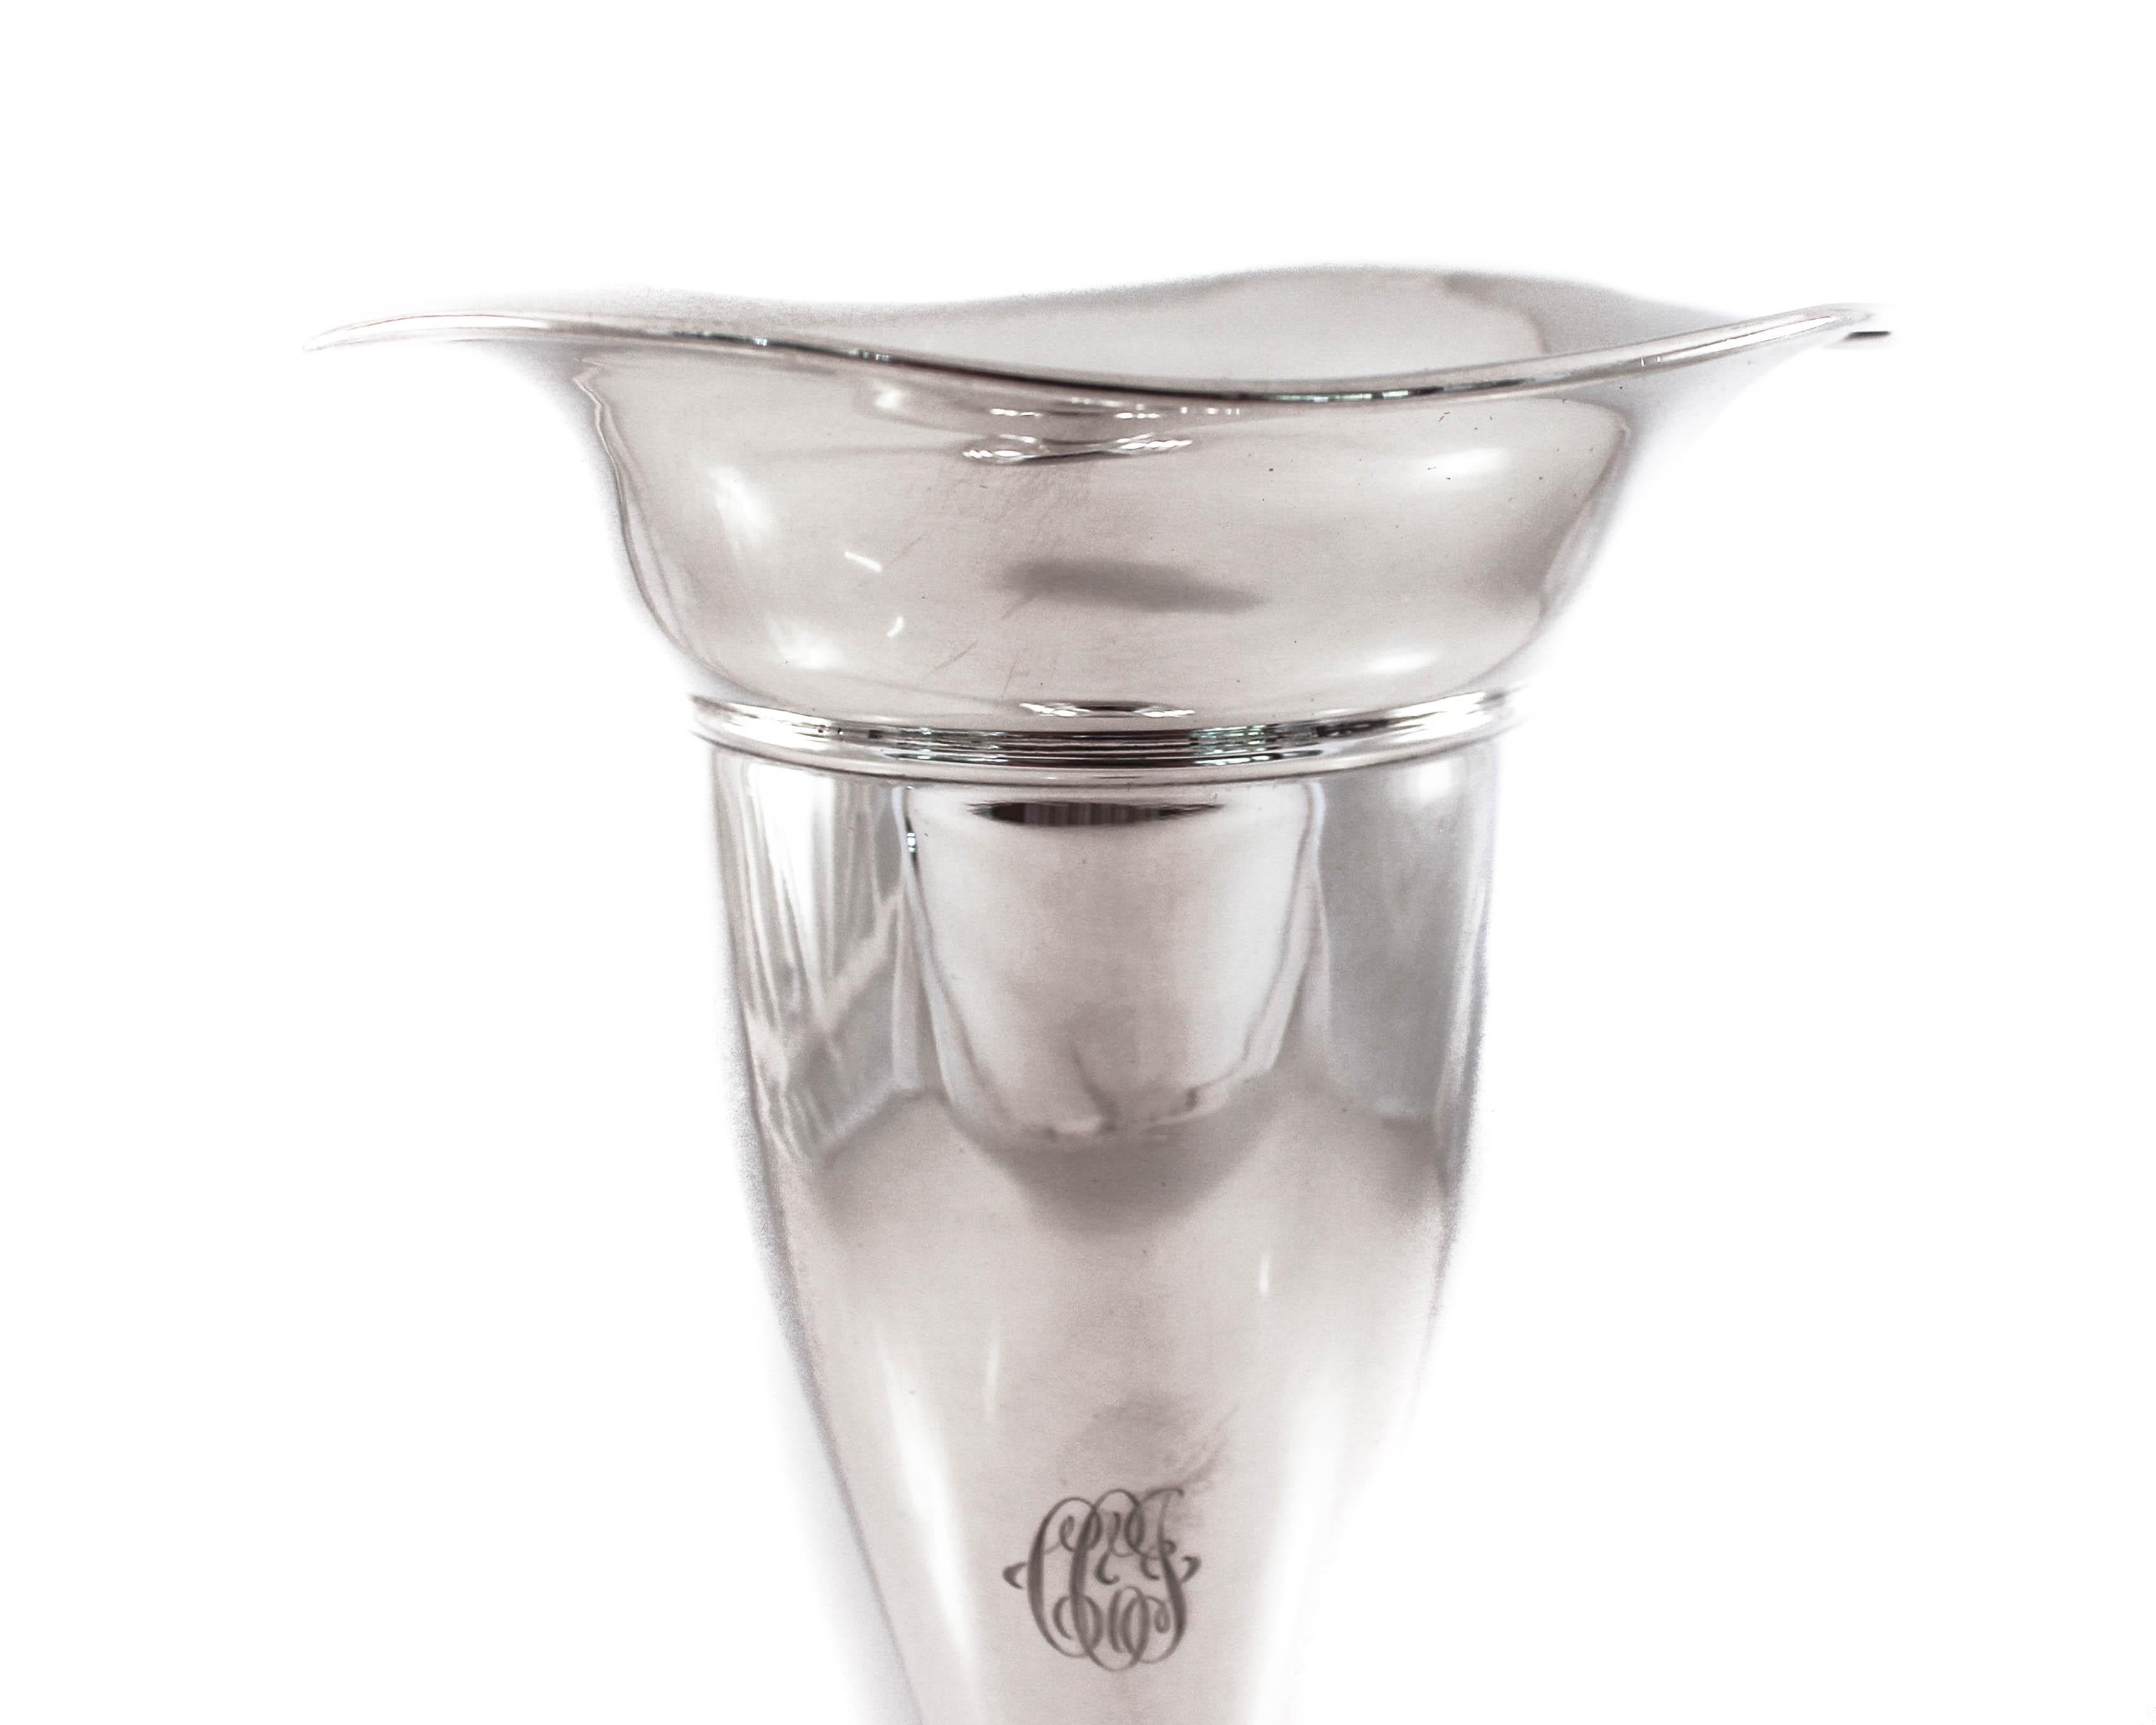 Wir freuen uns, diese Vase aus Sterlingsilber von J.F. anbieten zu können. Fradley & Company aus New York. Sie wurde zu Beginn des 20. Jahrhunderts hergestellt und war ihrer Zeit insofern voraus, als sie nicht stark verziert war. Sie hat eine sehr